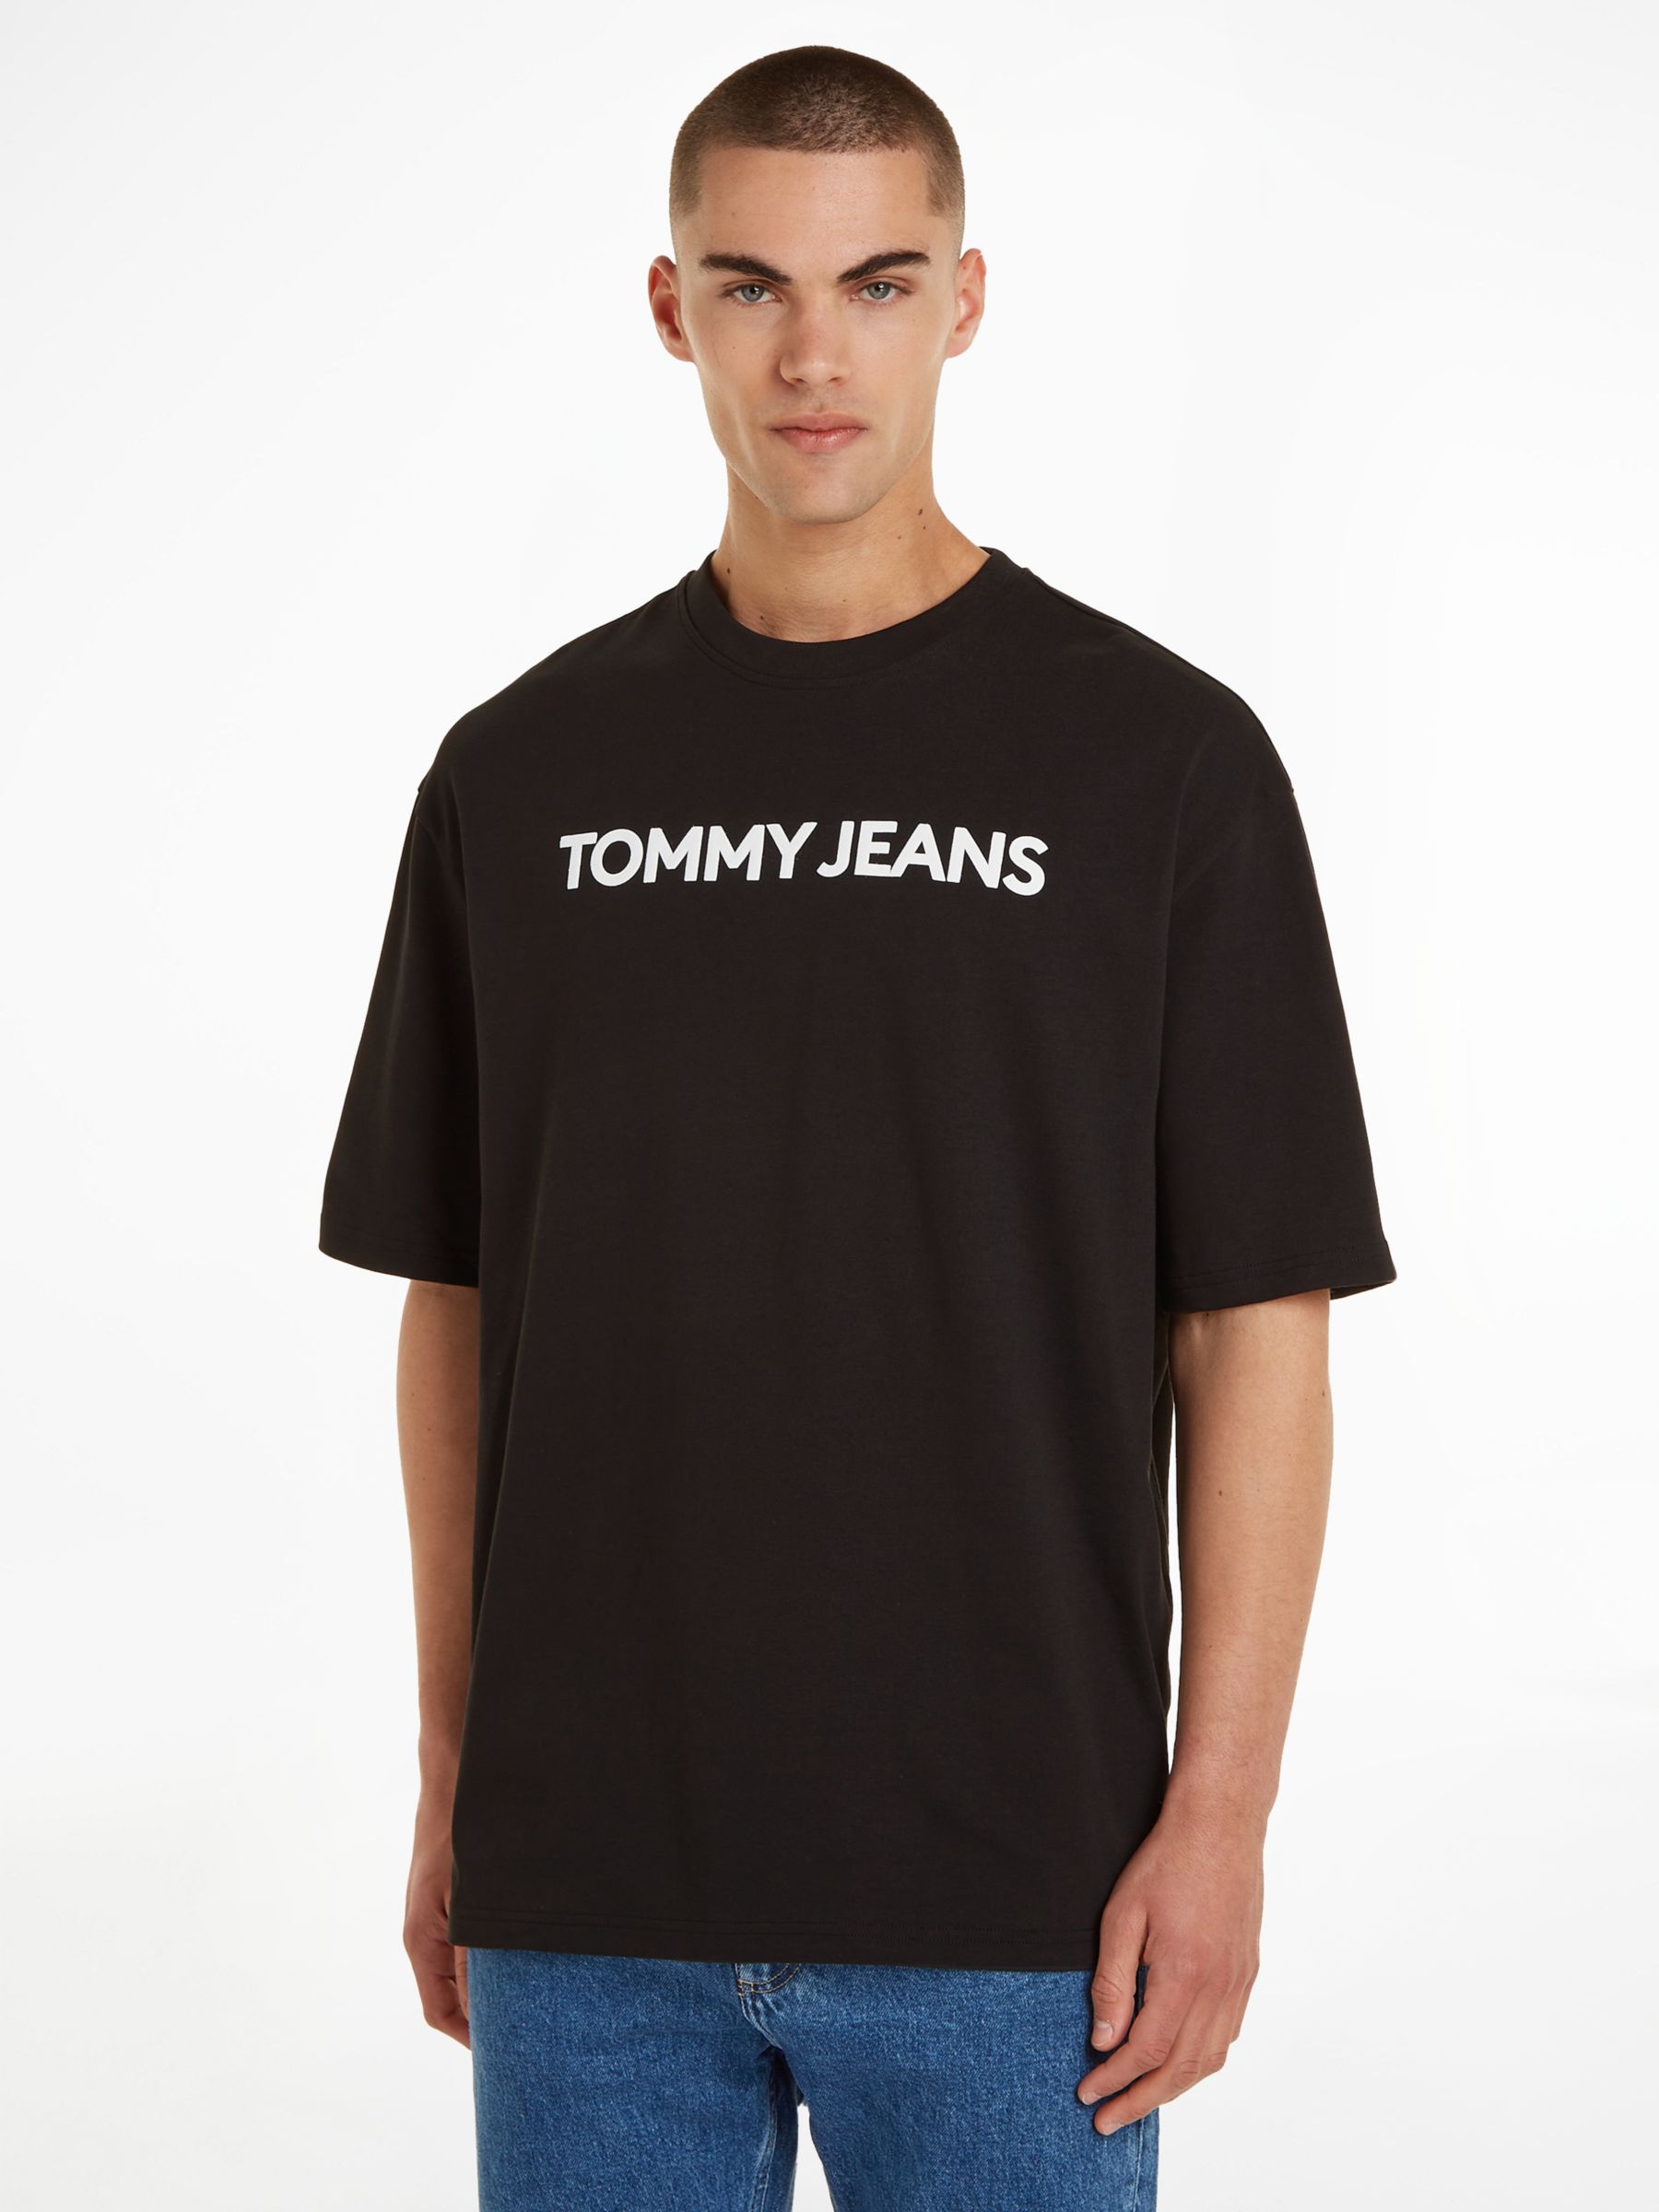 Tommy Jeans Oversized T-Shirt, Black, XXL